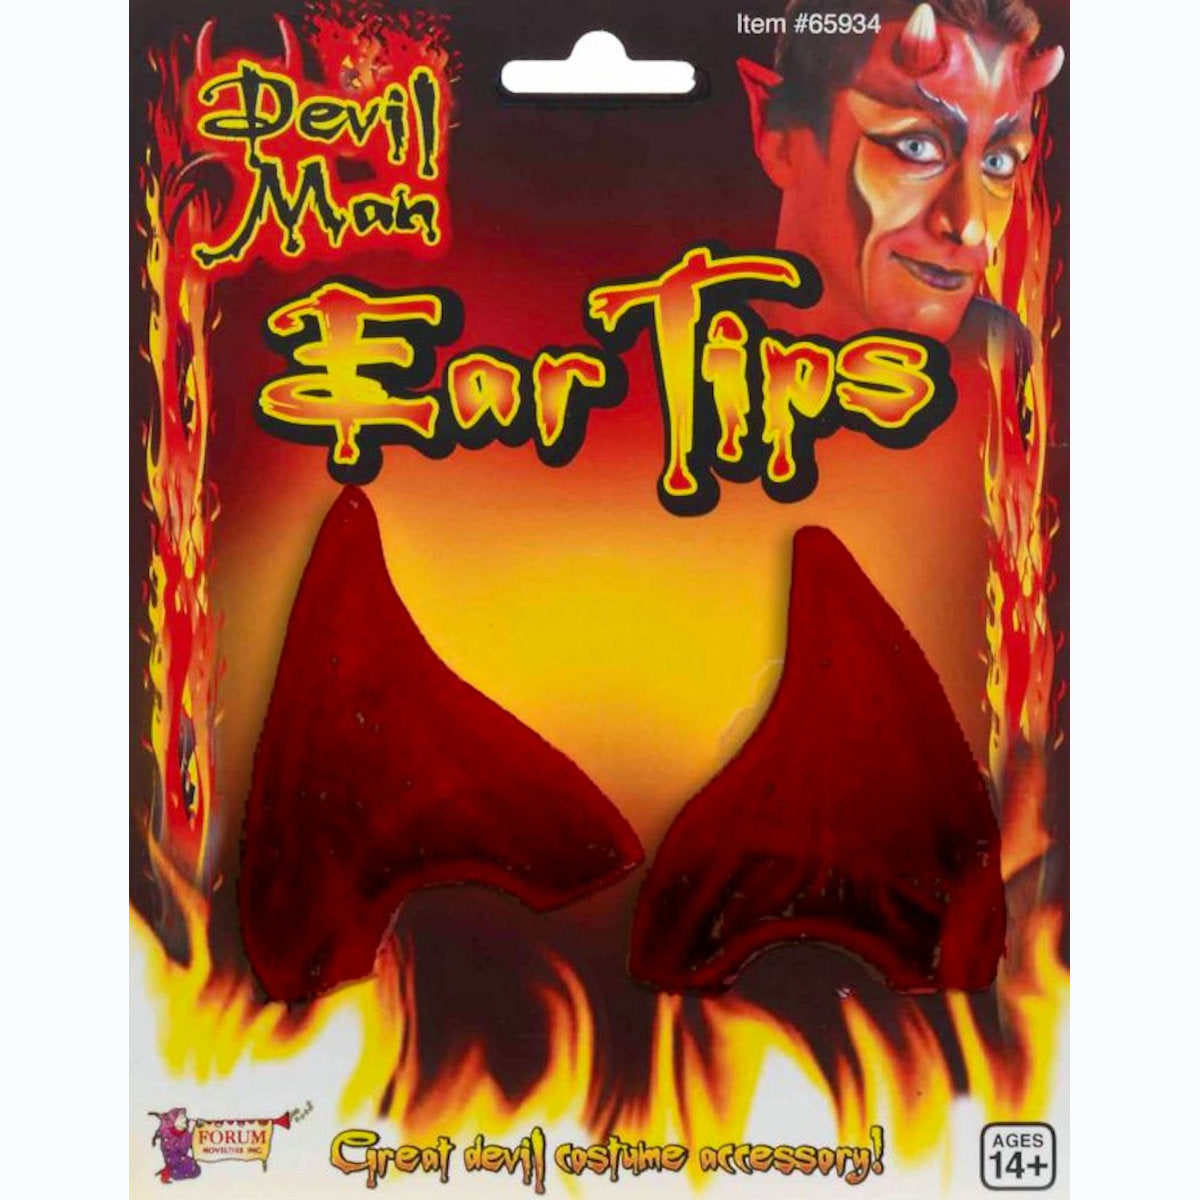 Devil Demon EAR TIPS fancy dress costume accessory